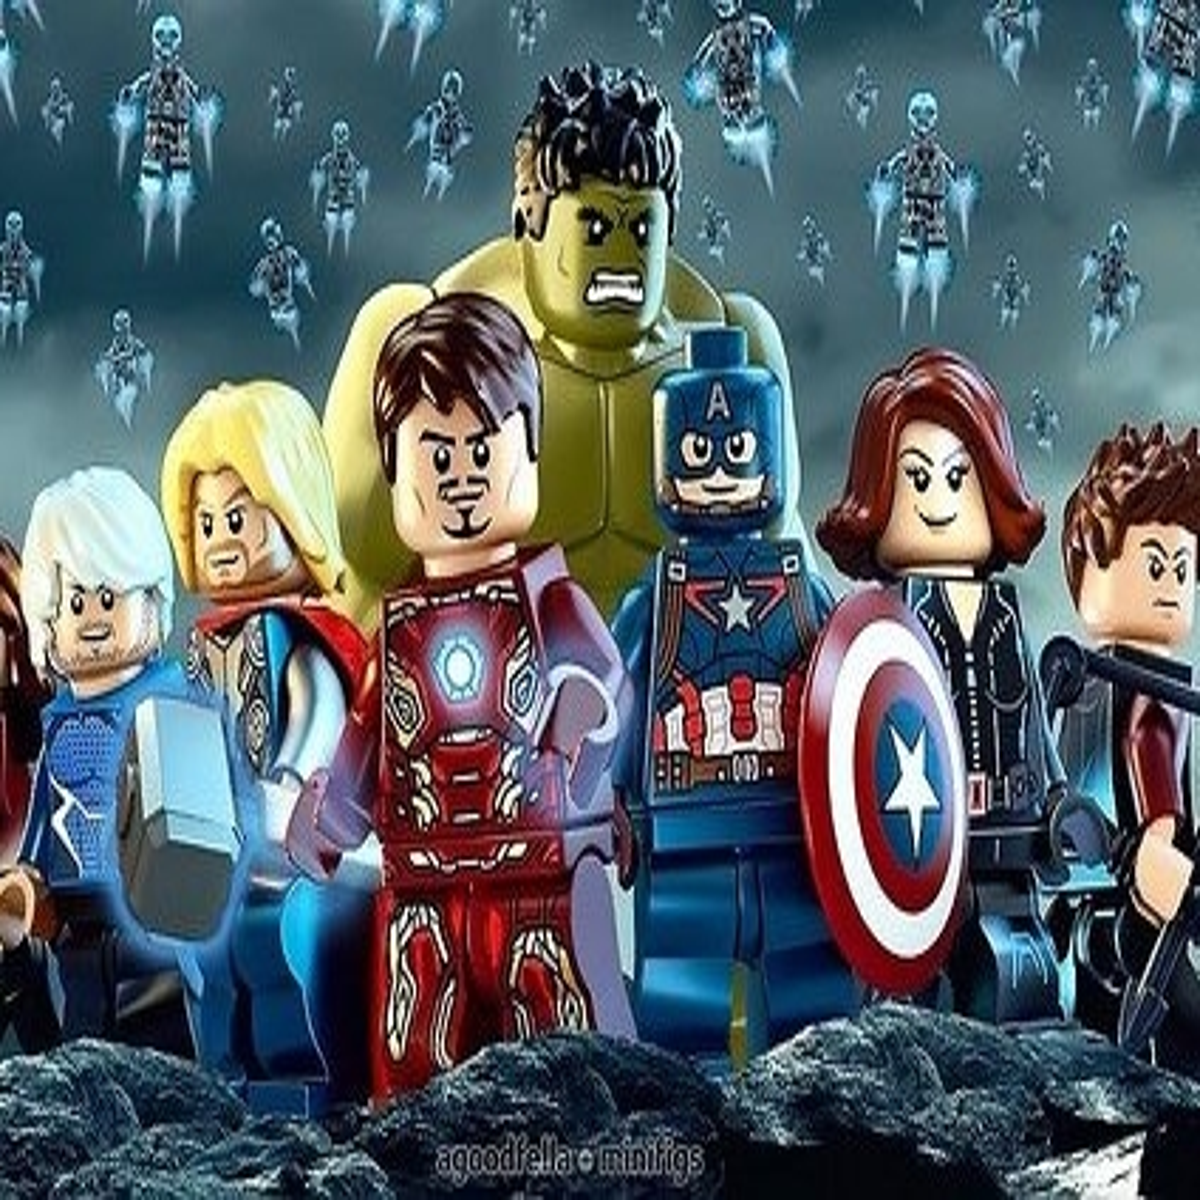 LEGO Marvel s Avengers